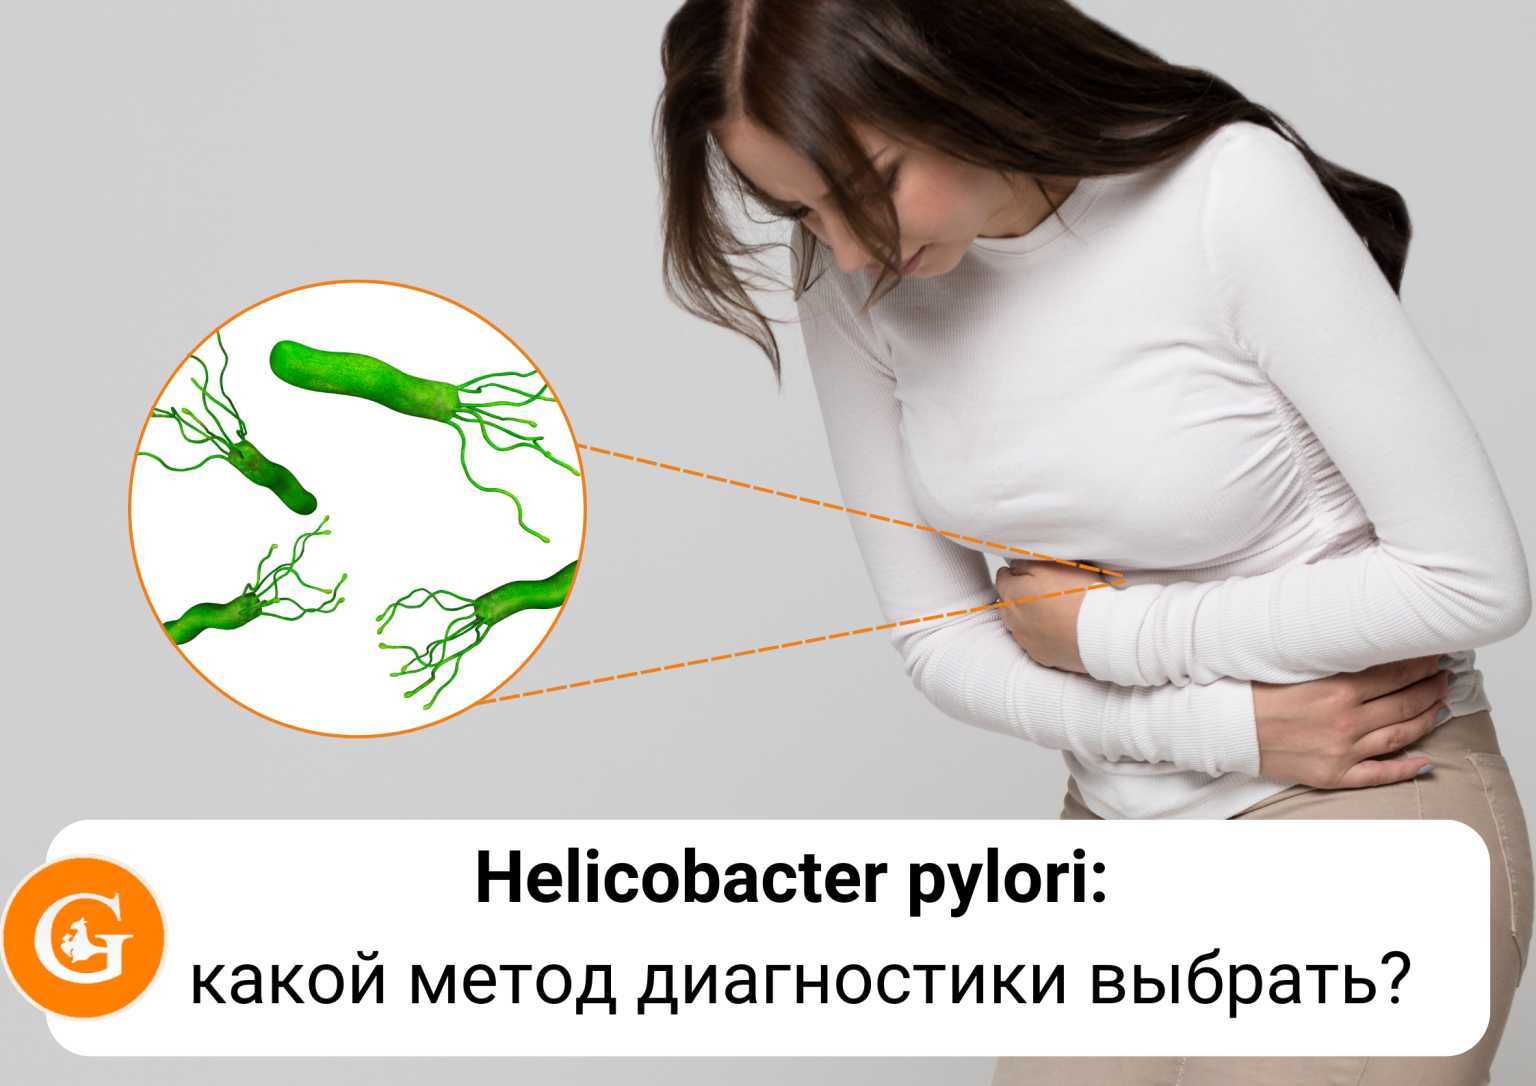 Como saber si tengo la bacteria helicobacter pylori